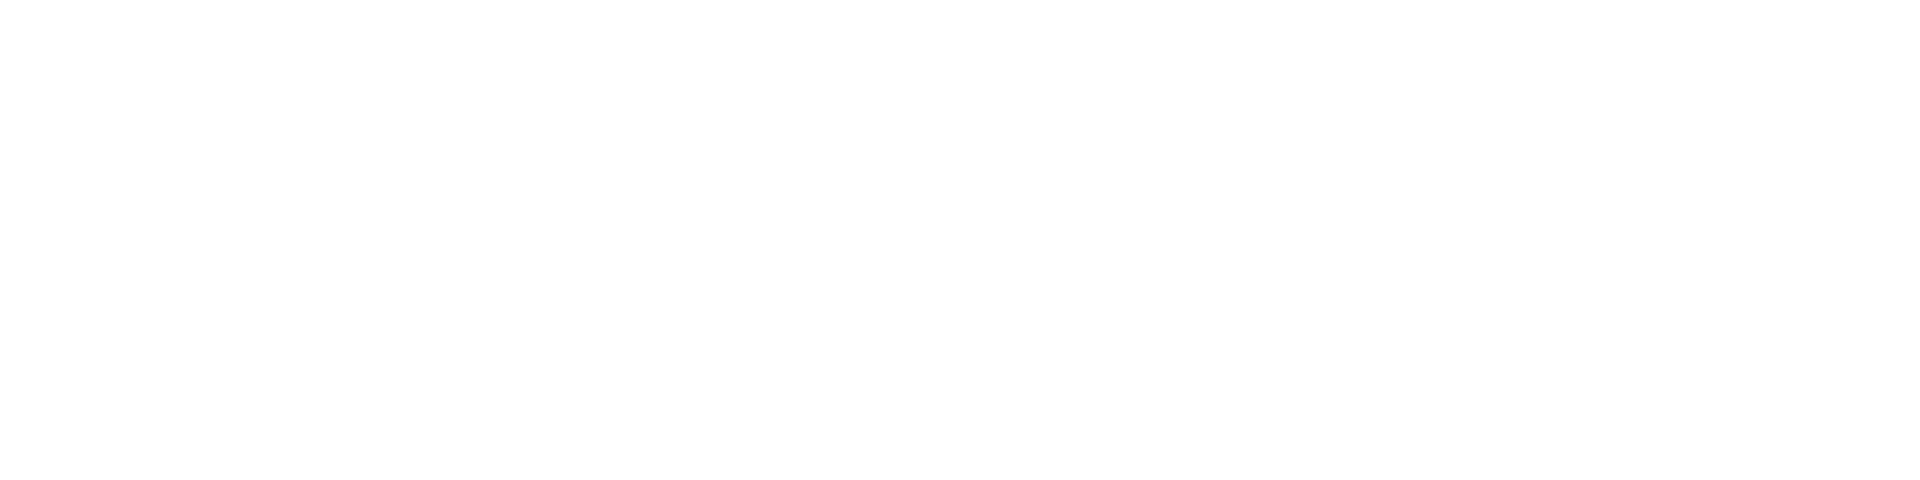 ledge_logoset.002-1